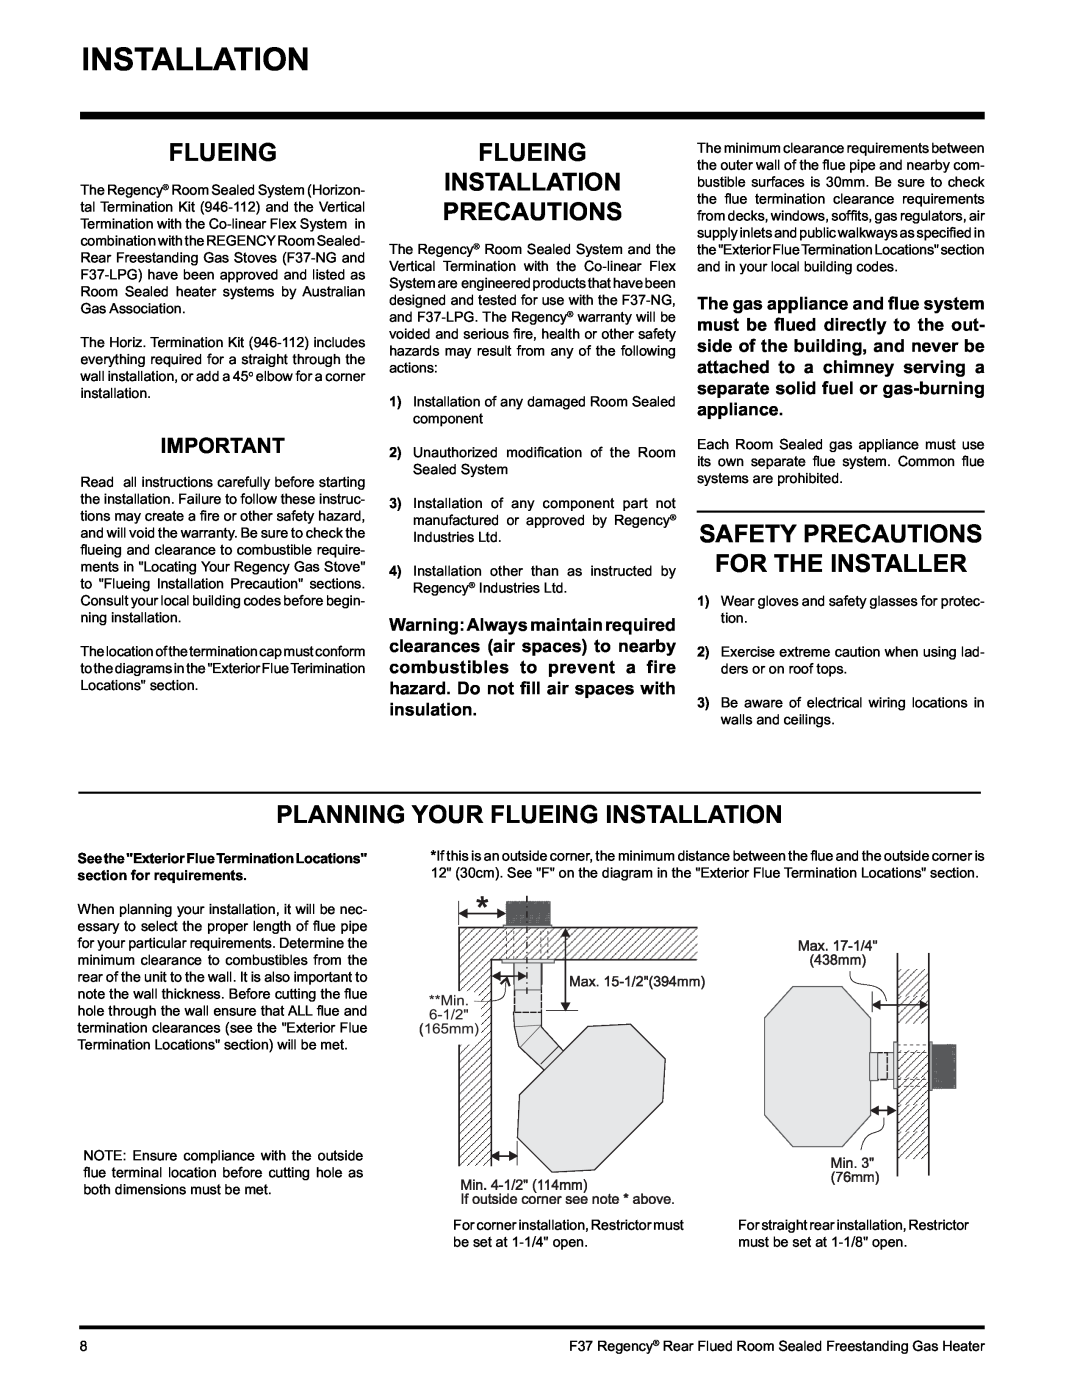 Regency F37-NG, F37-LPG installation manual Flueing Installation Precautions, Safety Precautions For The Installer 